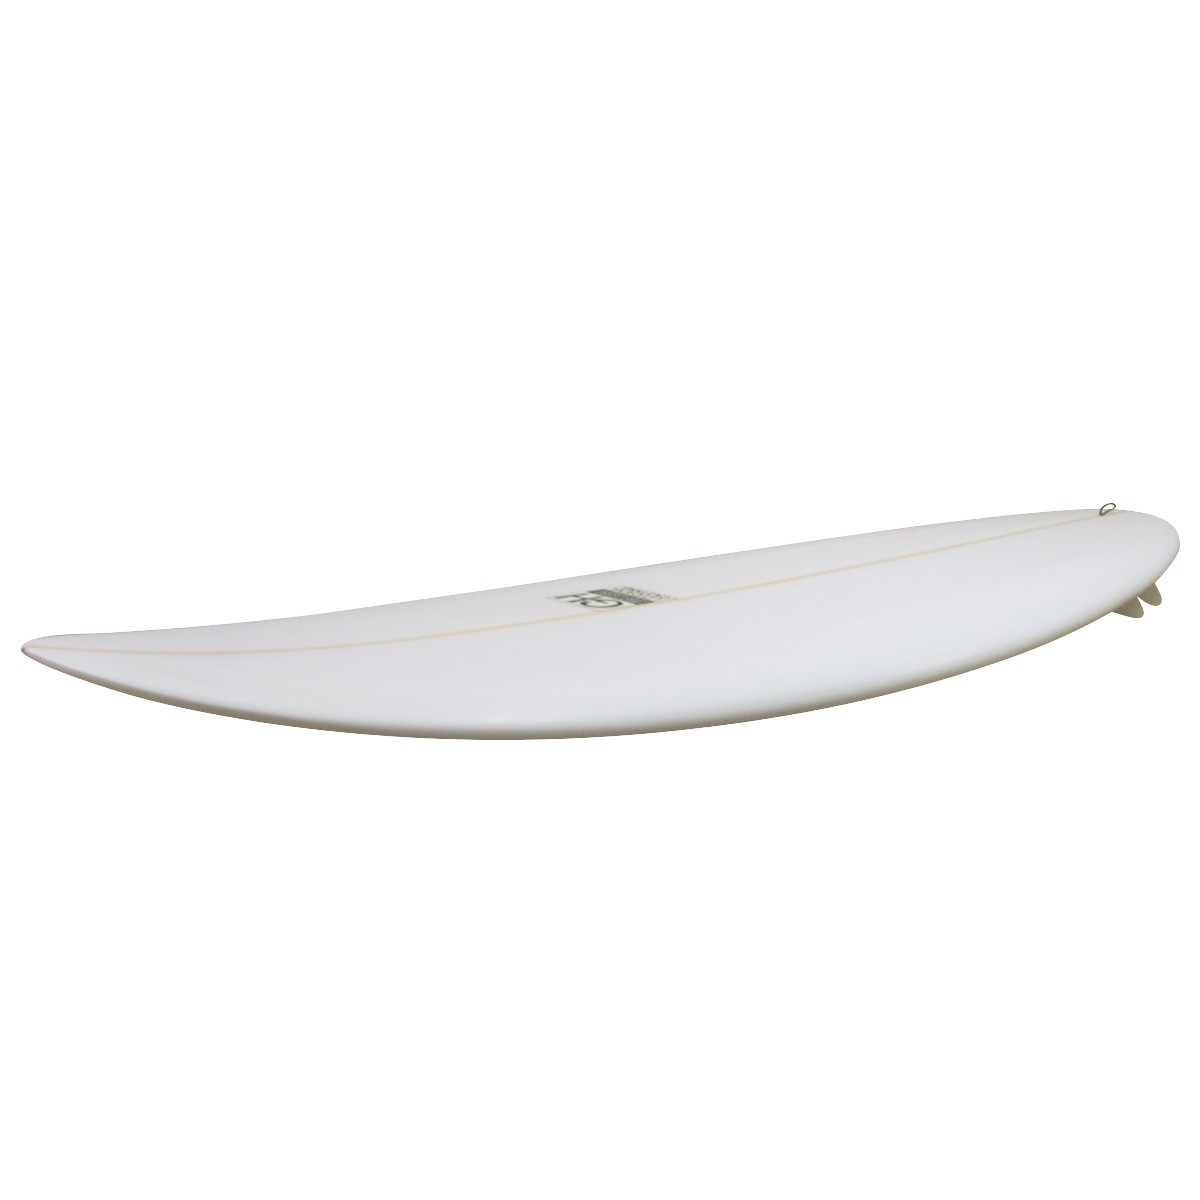 Gary Hanel Surfboards : Bonzer Egg 6'6"